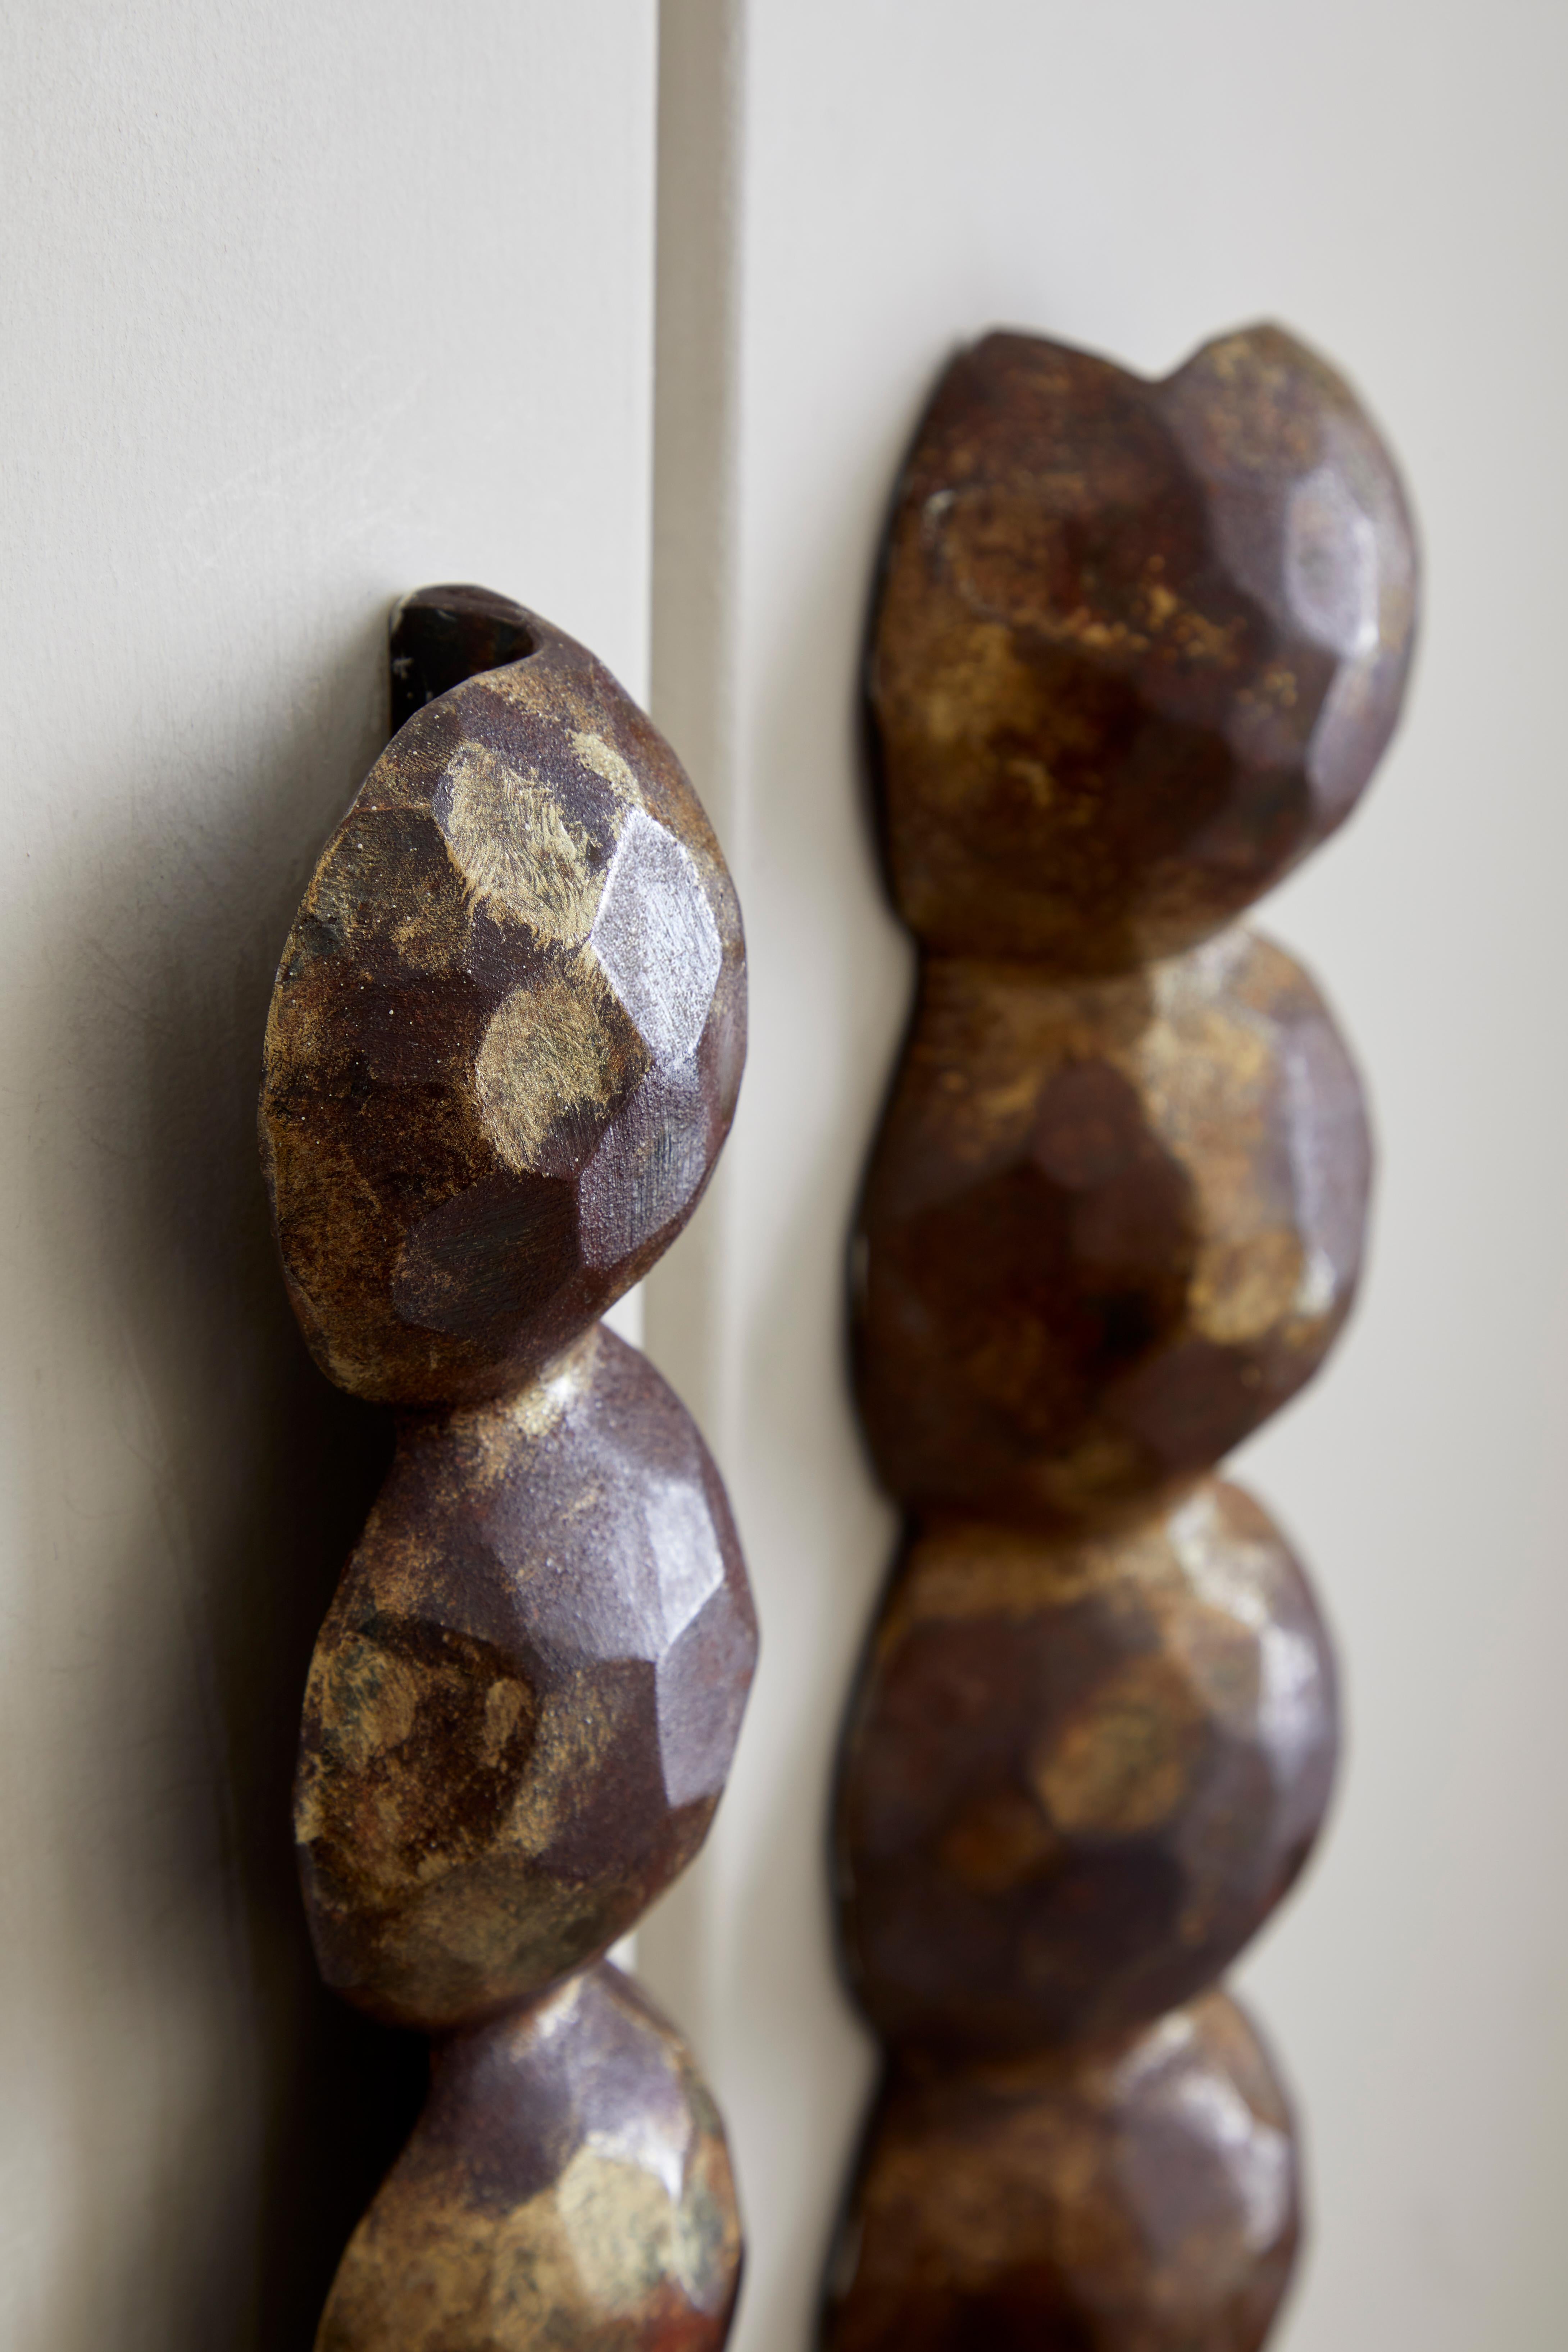 
Margit Wittig hat ihre bildhauerischen Fähigkeiten genutzt, um wunderschöne, wohlproportionierte Türgriffe zu entwerfen, die eine Komposition aus ihren einzigartigen perlenförmigen Designs sind.

Jeder Türgriff beginnt mit handgeformten Kugeln, die